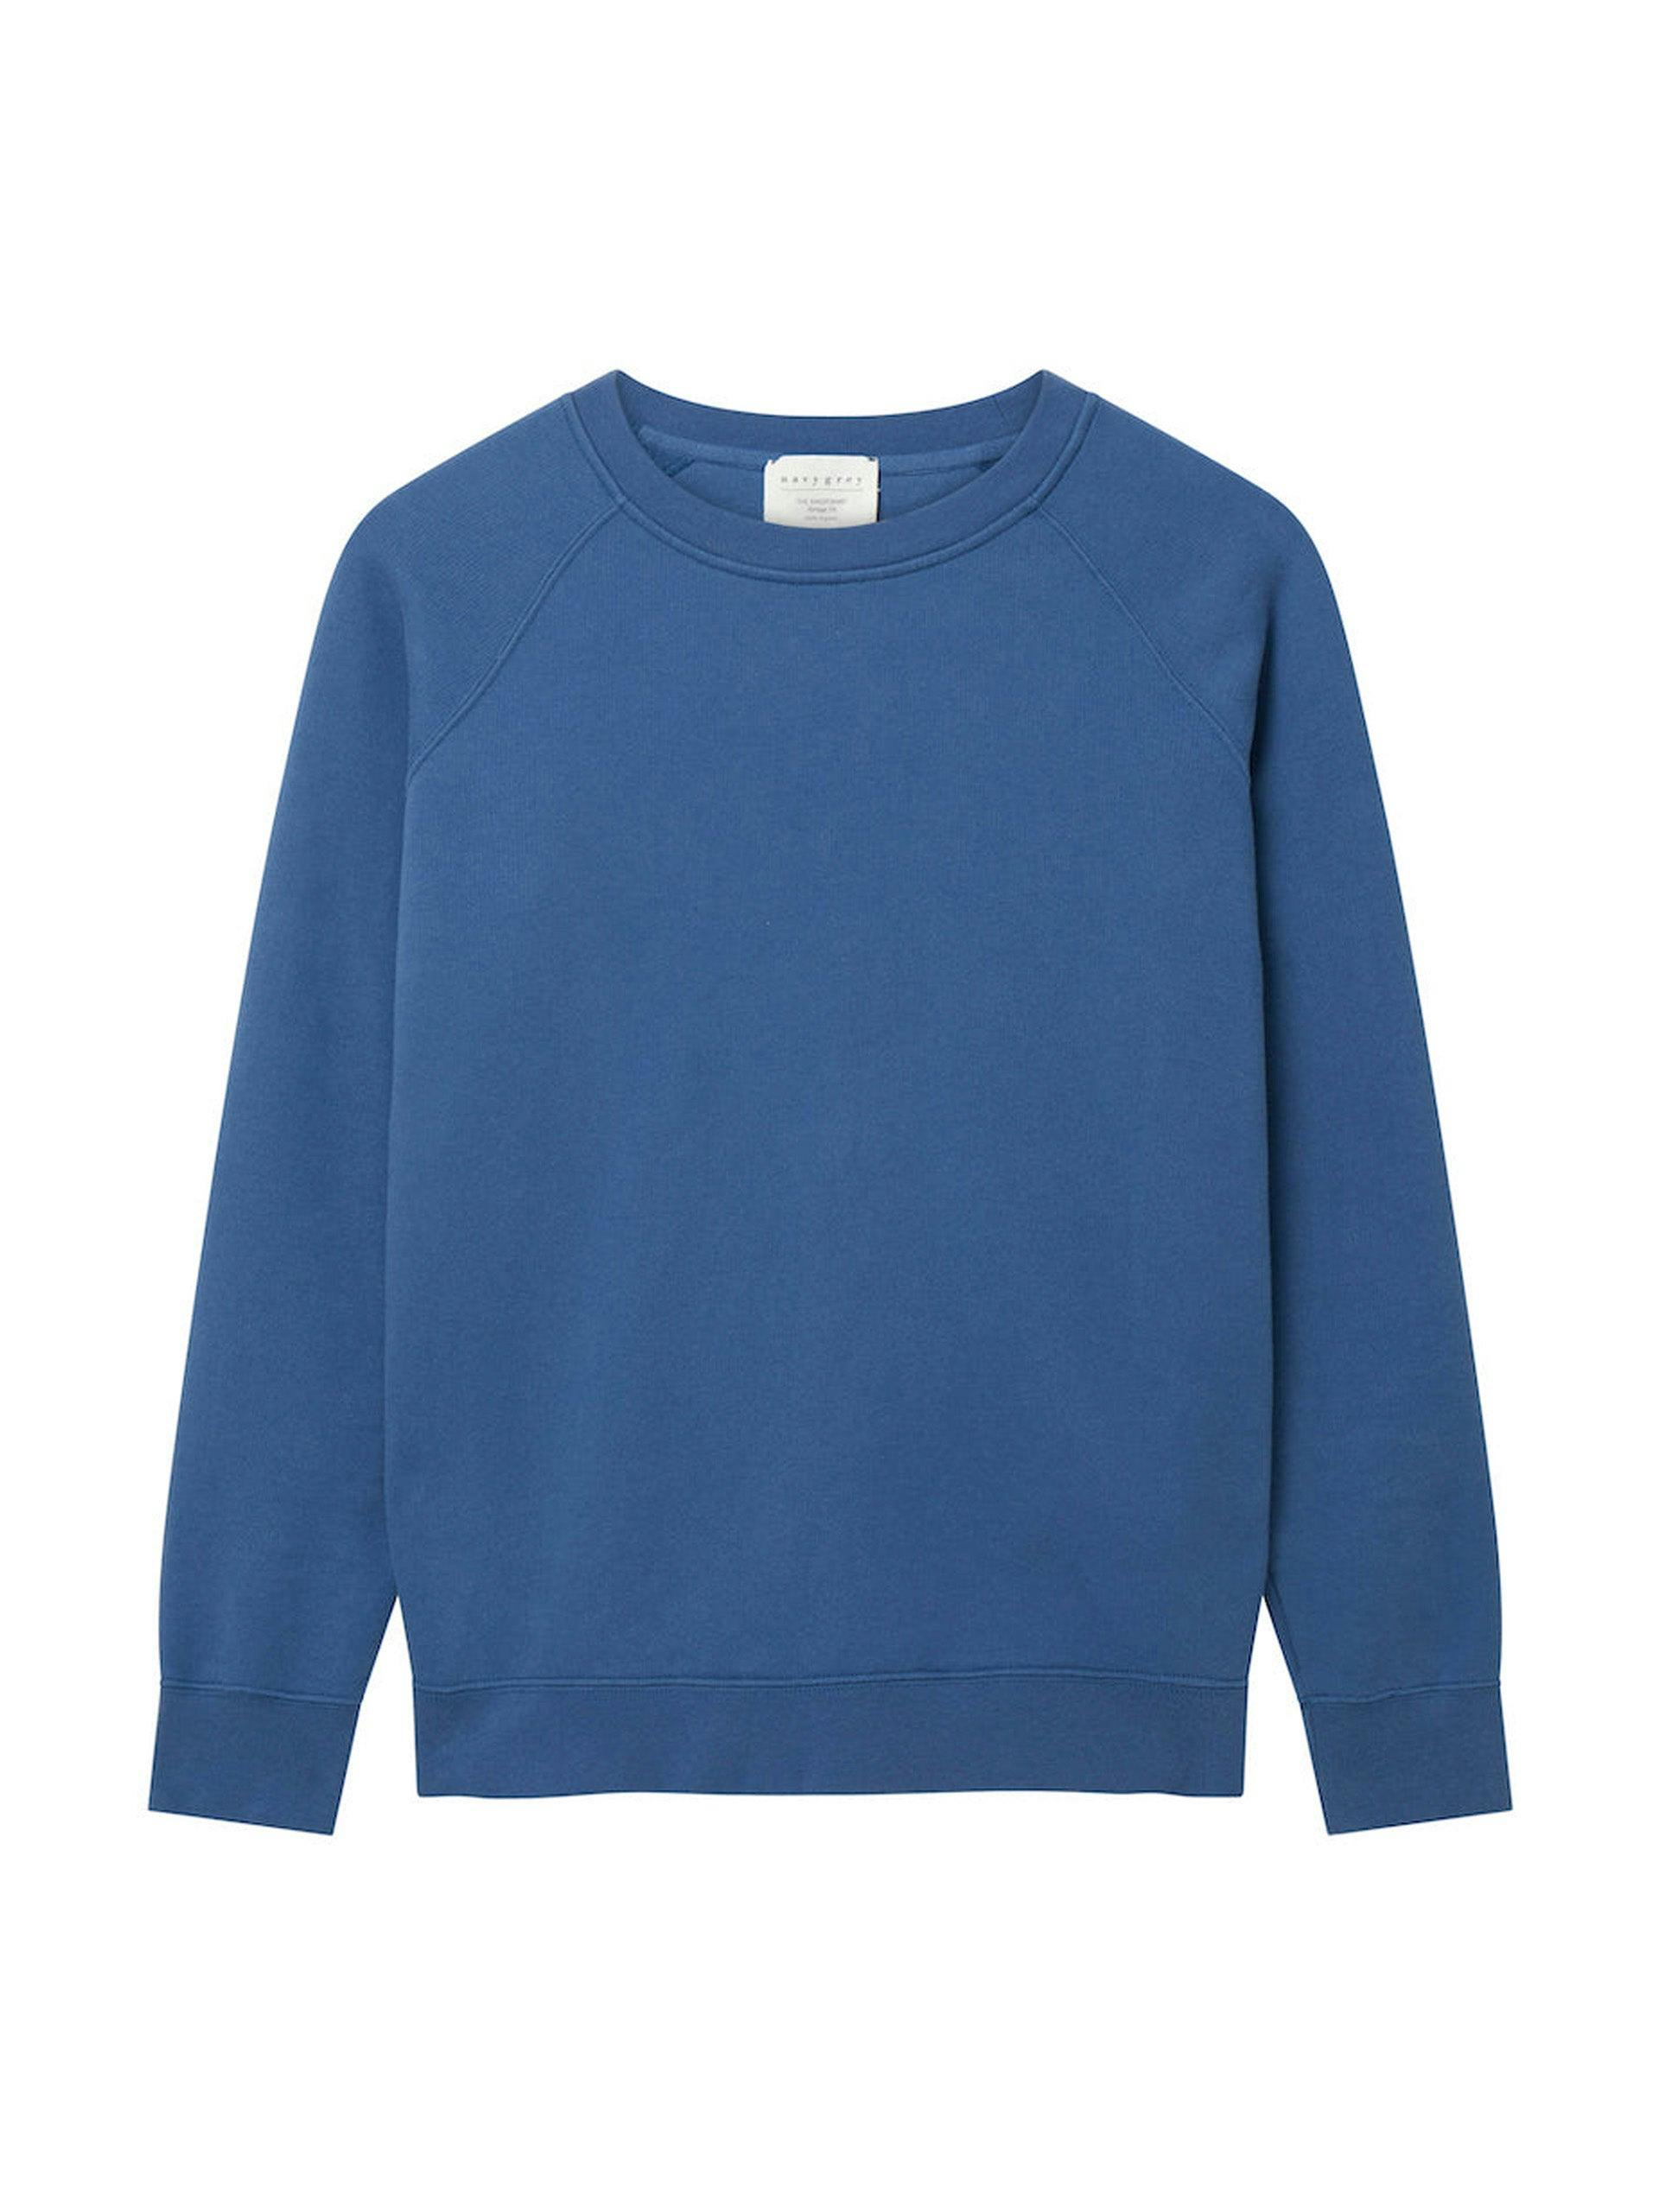 The Vintage-fit sweatshirt in ocean blue